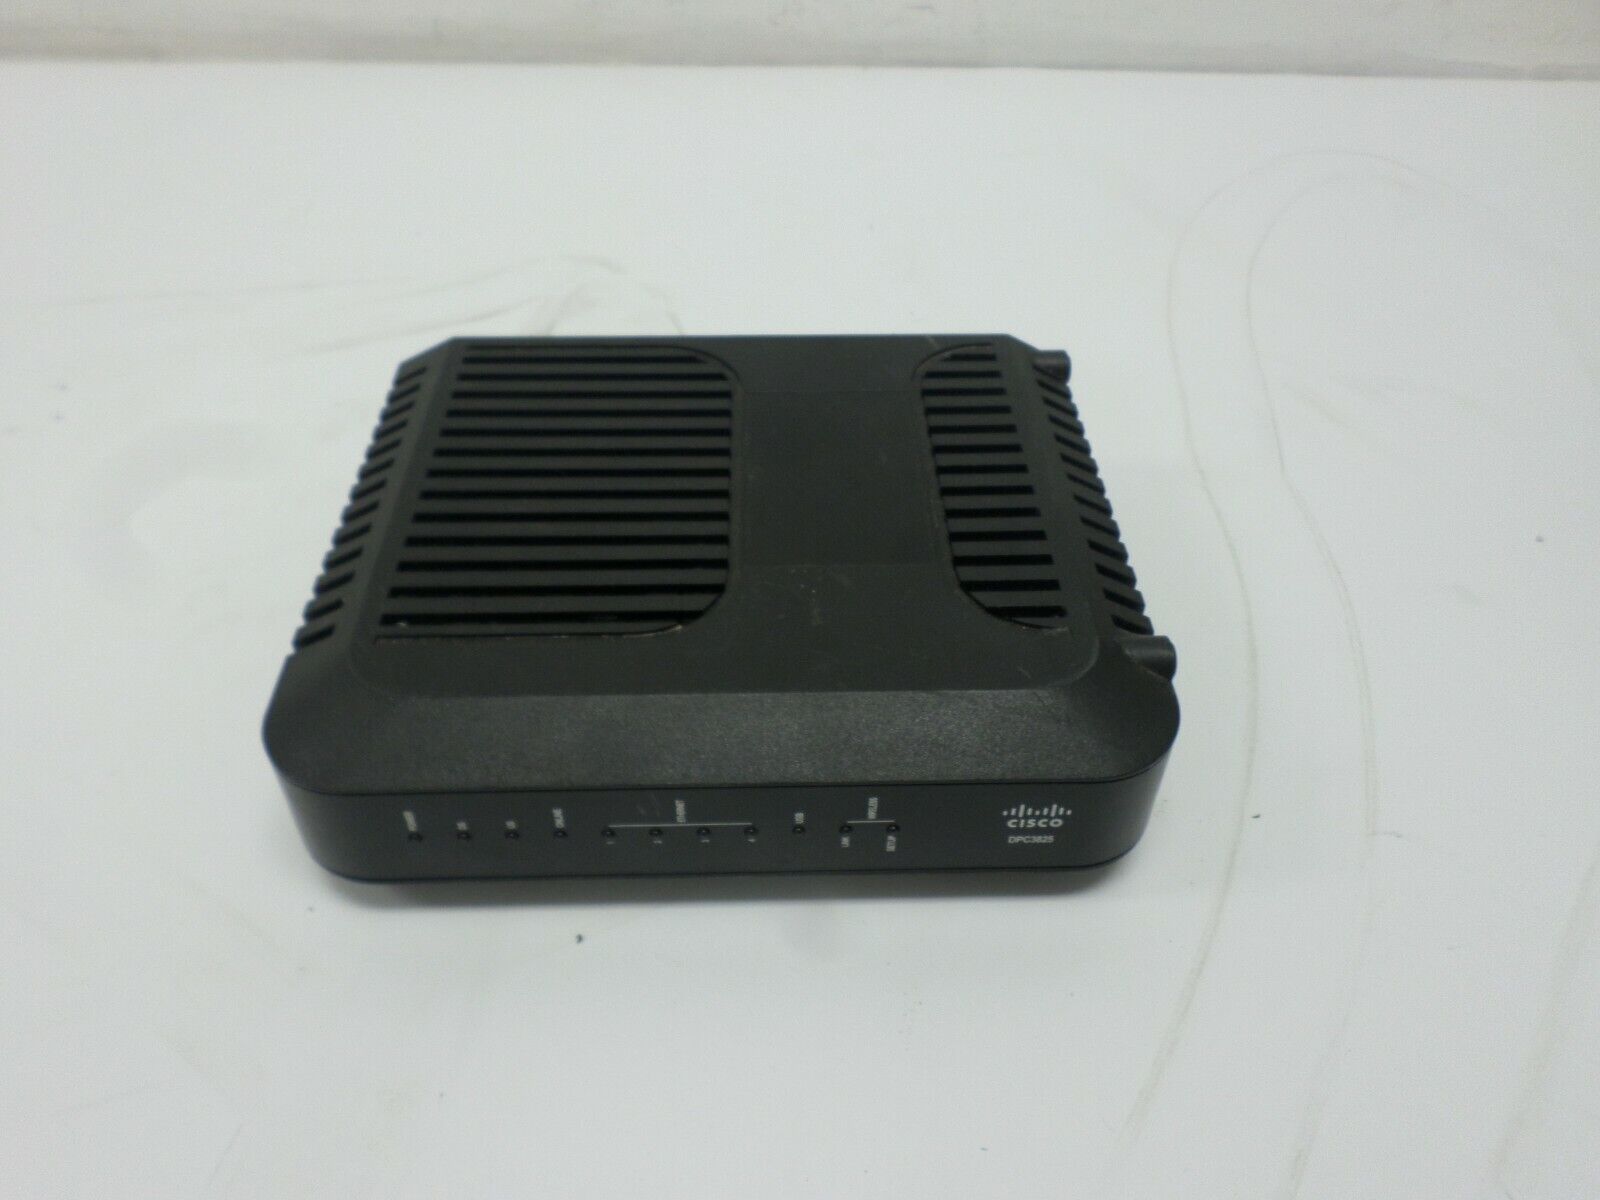 Cisco DPC3825 4 Port DOCSIS 3.0 Gateway Wireless Router 